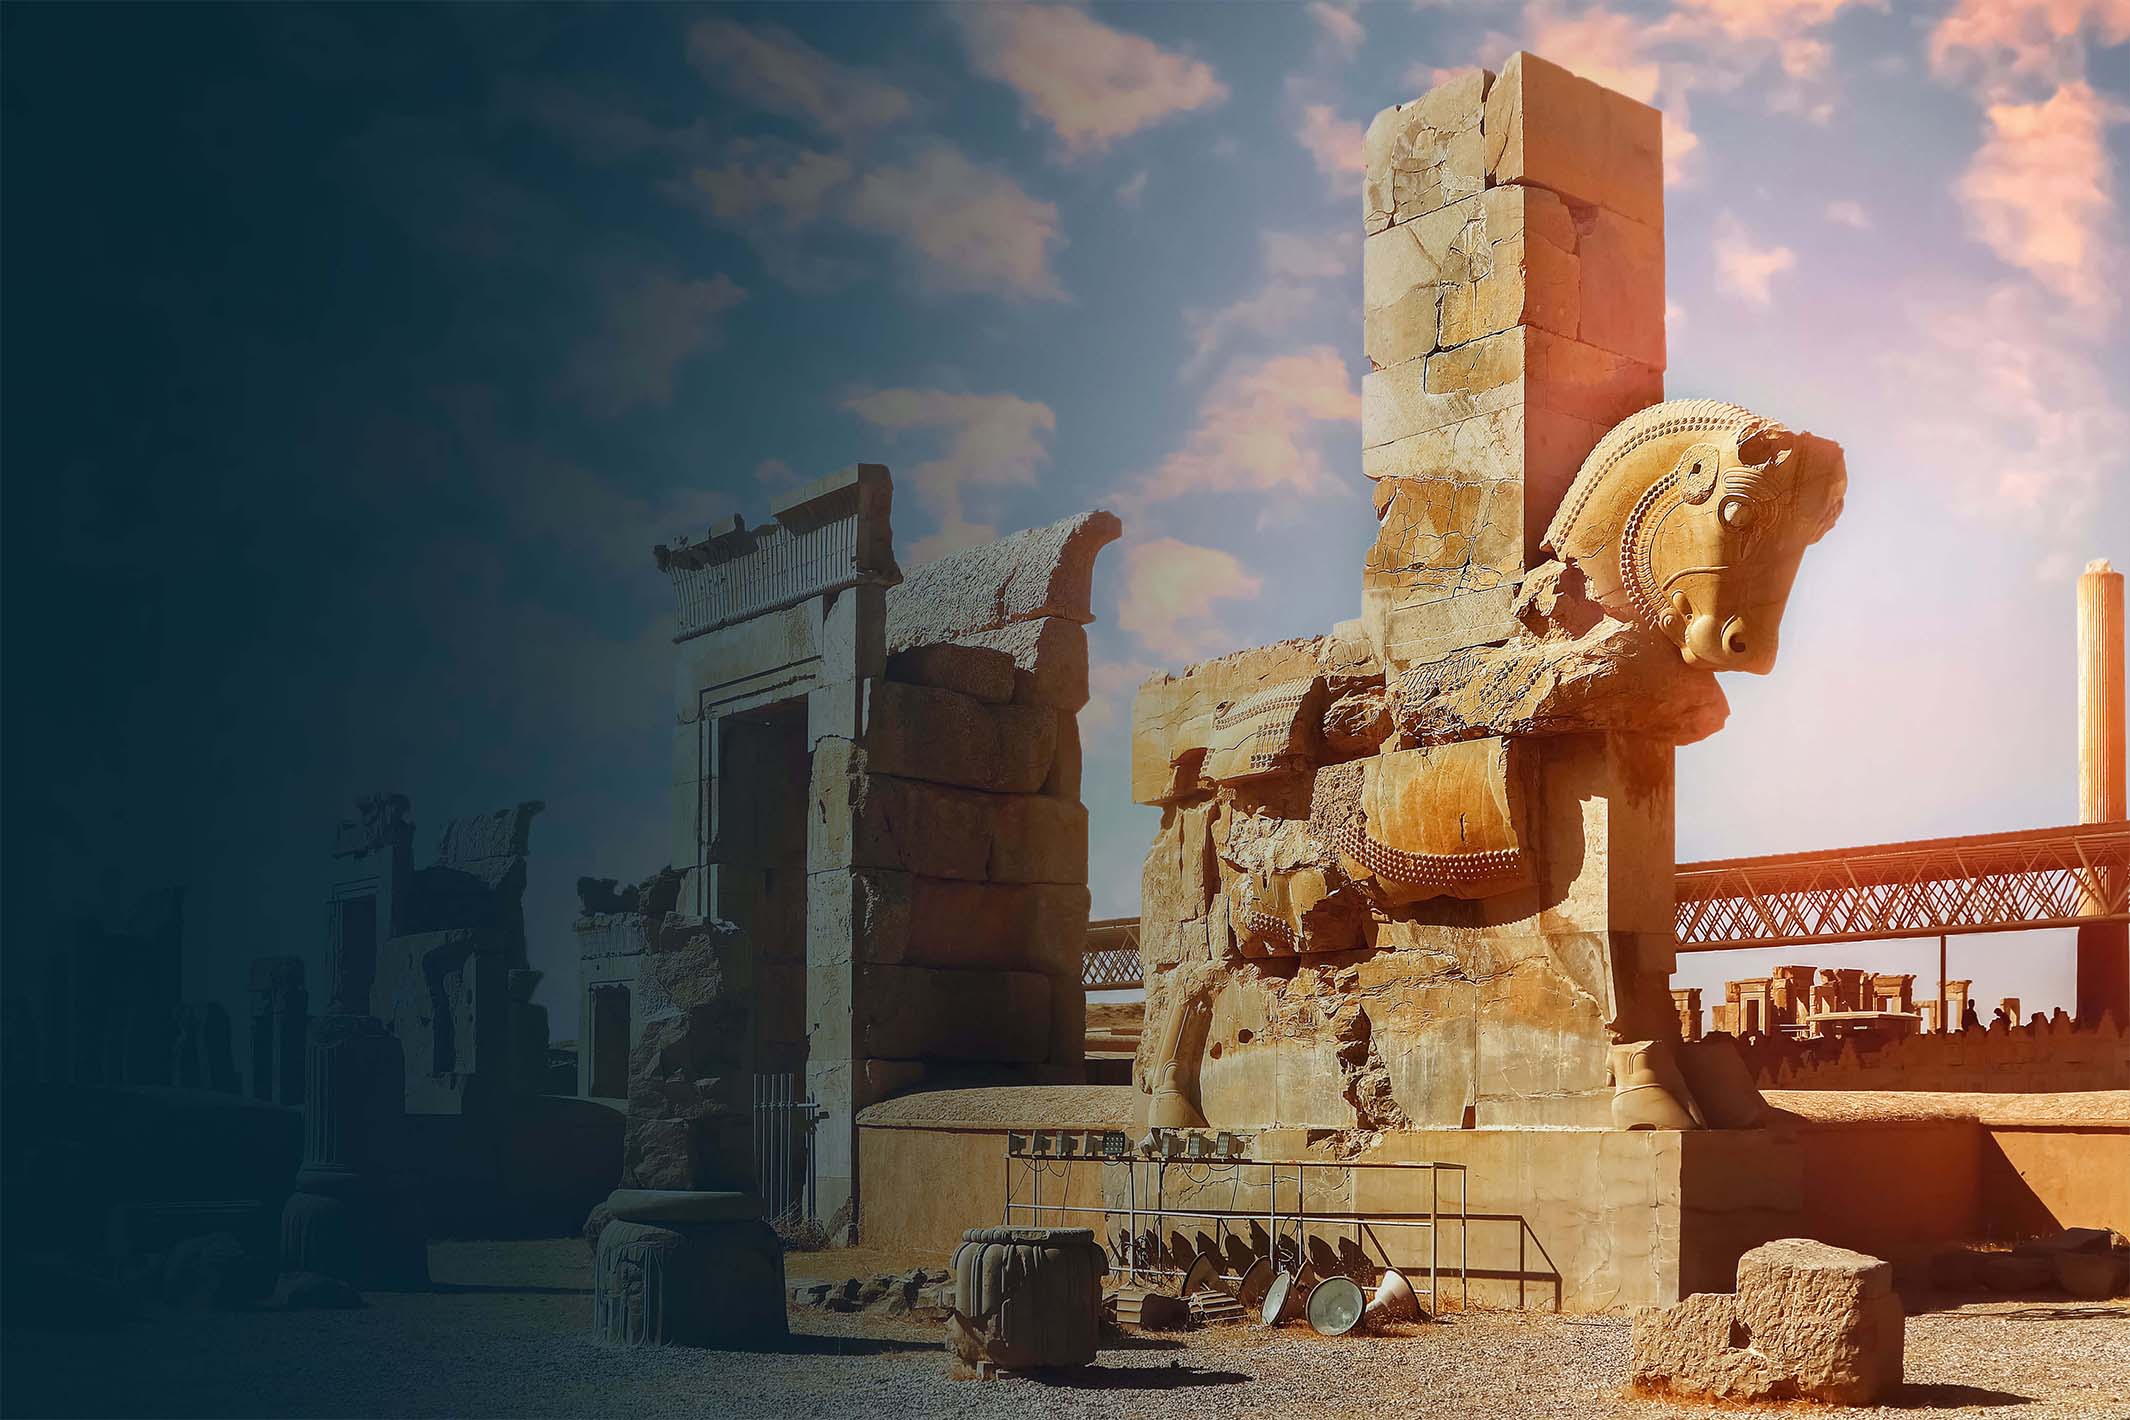 Ein Bild vom Eingangsbereich der historischen Persepolis. Es ist ein Fabelwesen aus Stein zu sehen.